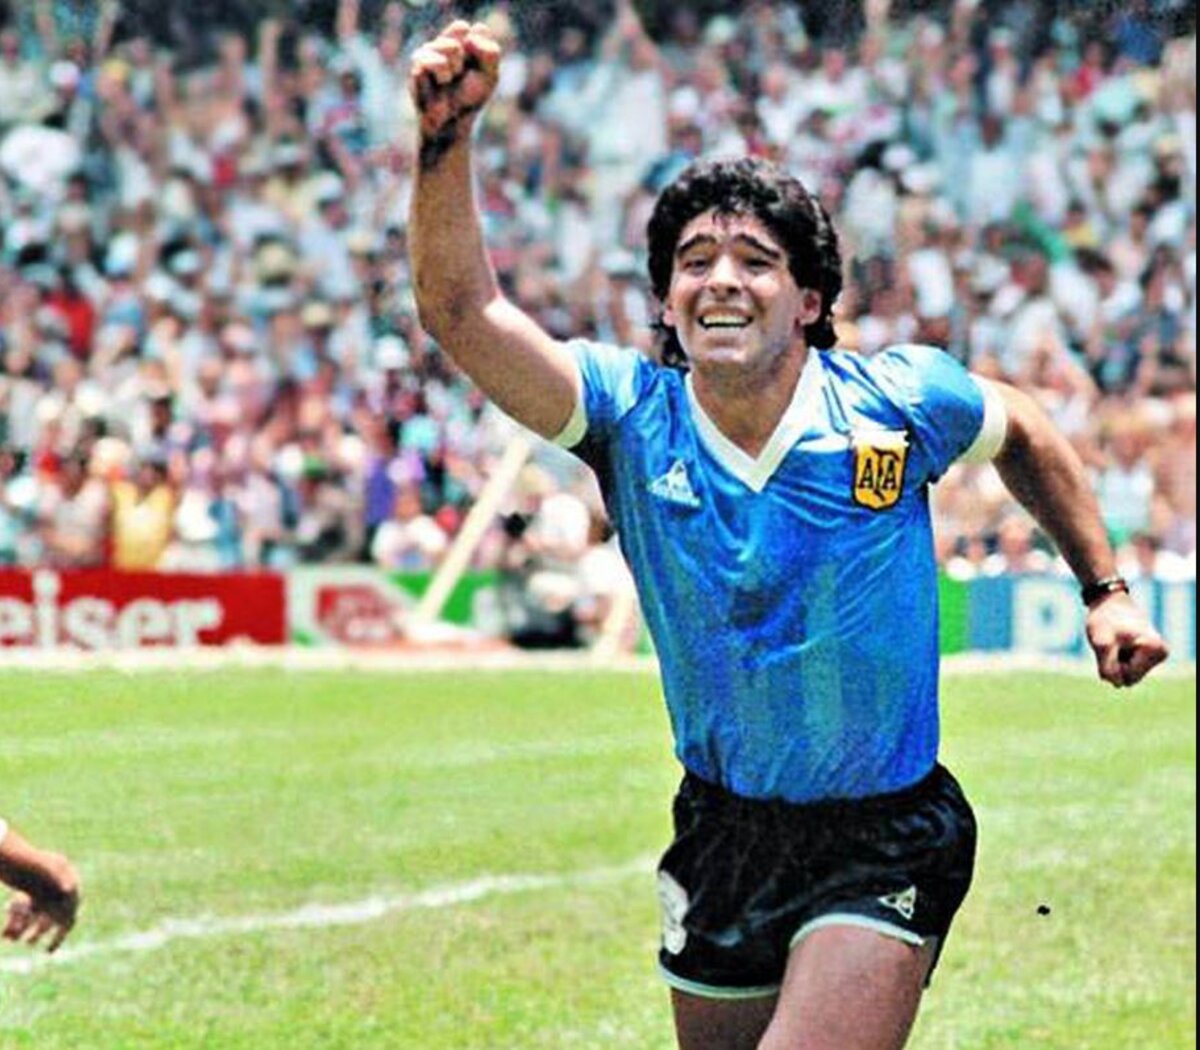 Subastarán camiseta de Diego Maradona La camiseta que usó el astro argentino Diego Armando Maradona en el recordado partido ante Inglaterra, en los cuartos de final del Mundial de México 1986, será vendida por el ex futbolista inglés Steve Hodge, su dueño.